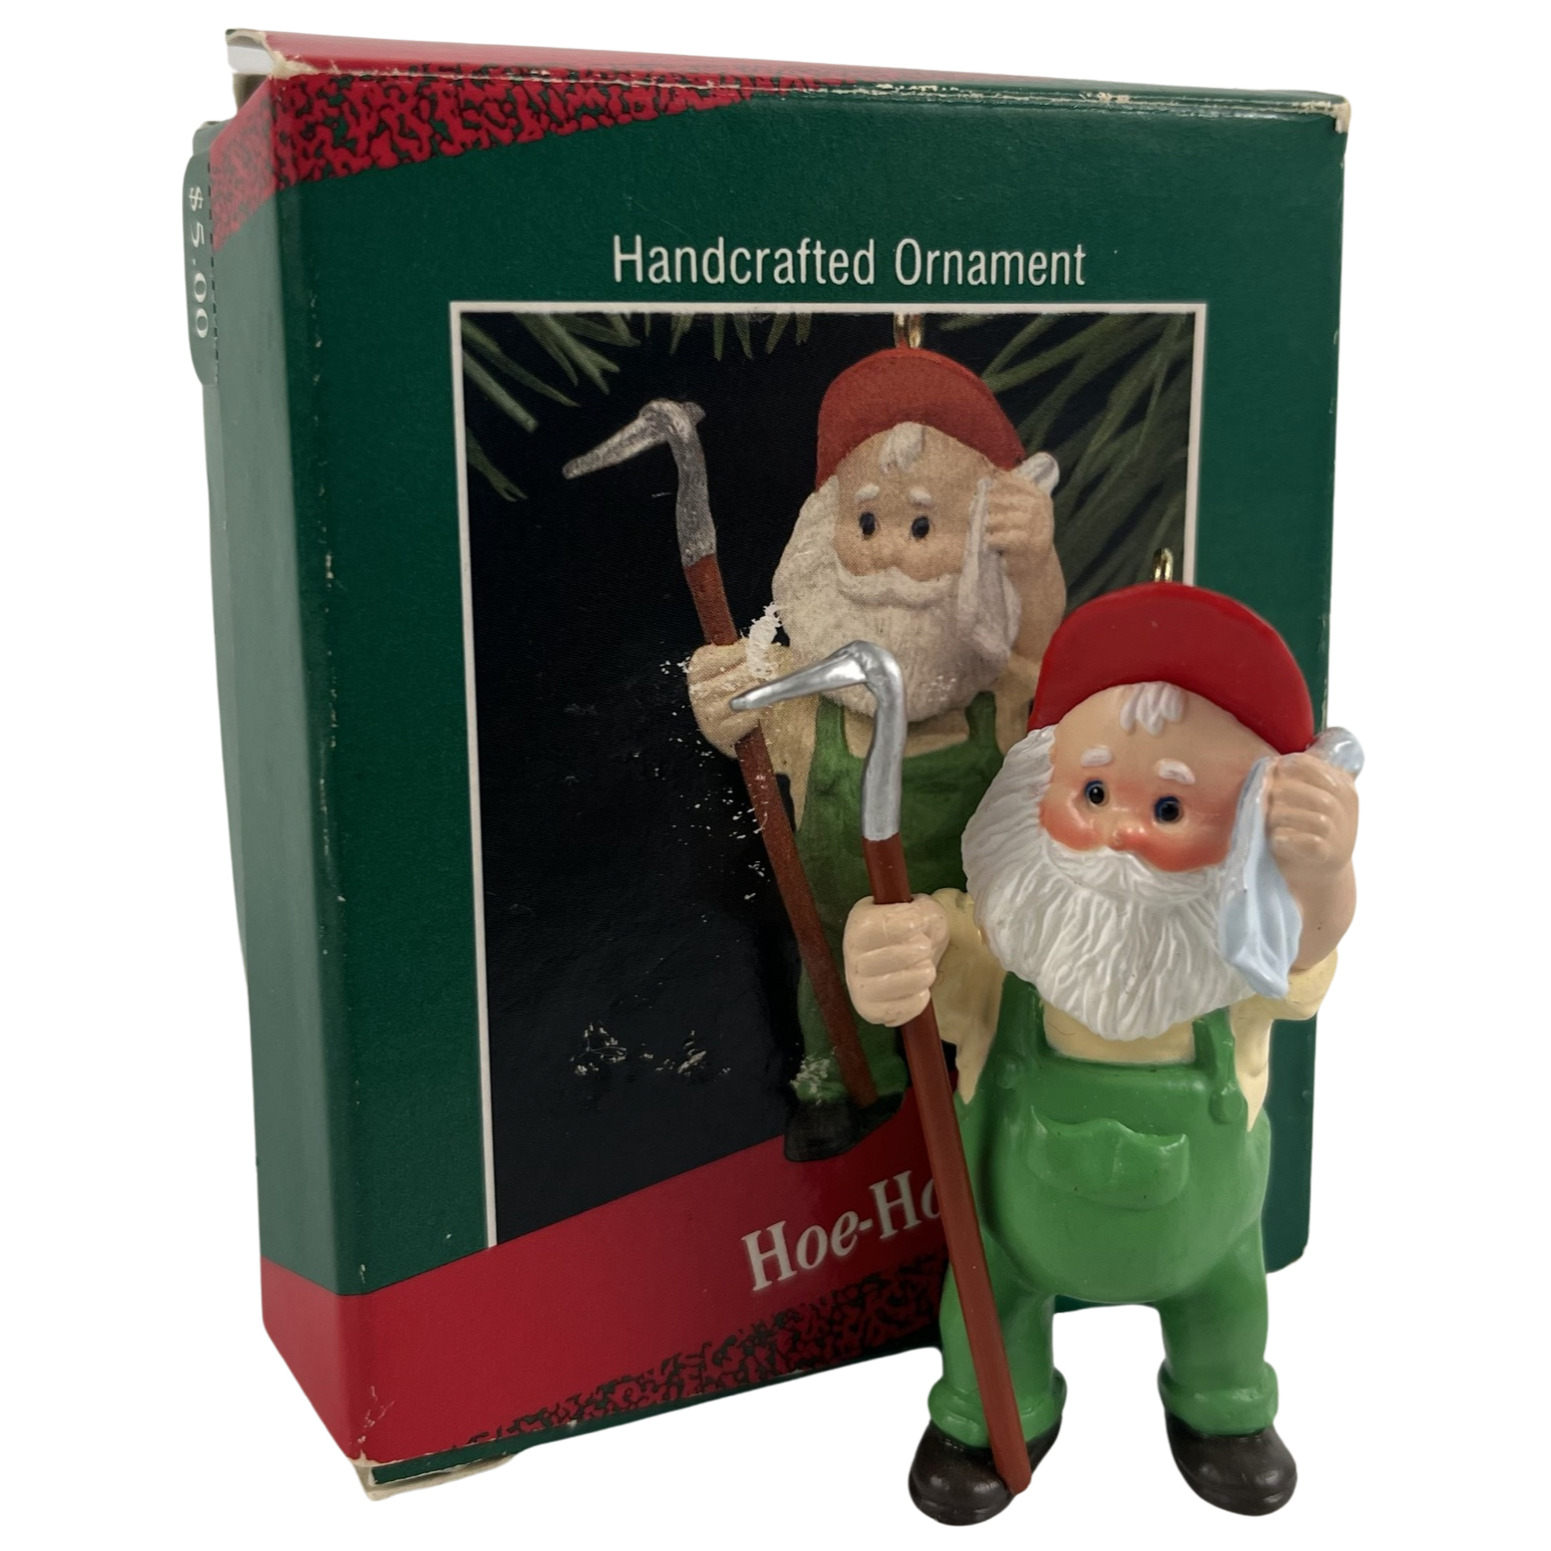 Hallmark Ornament Hoe Hoe Hoe Santa Claus Gardener VTG 1988 Holiday Keepsake